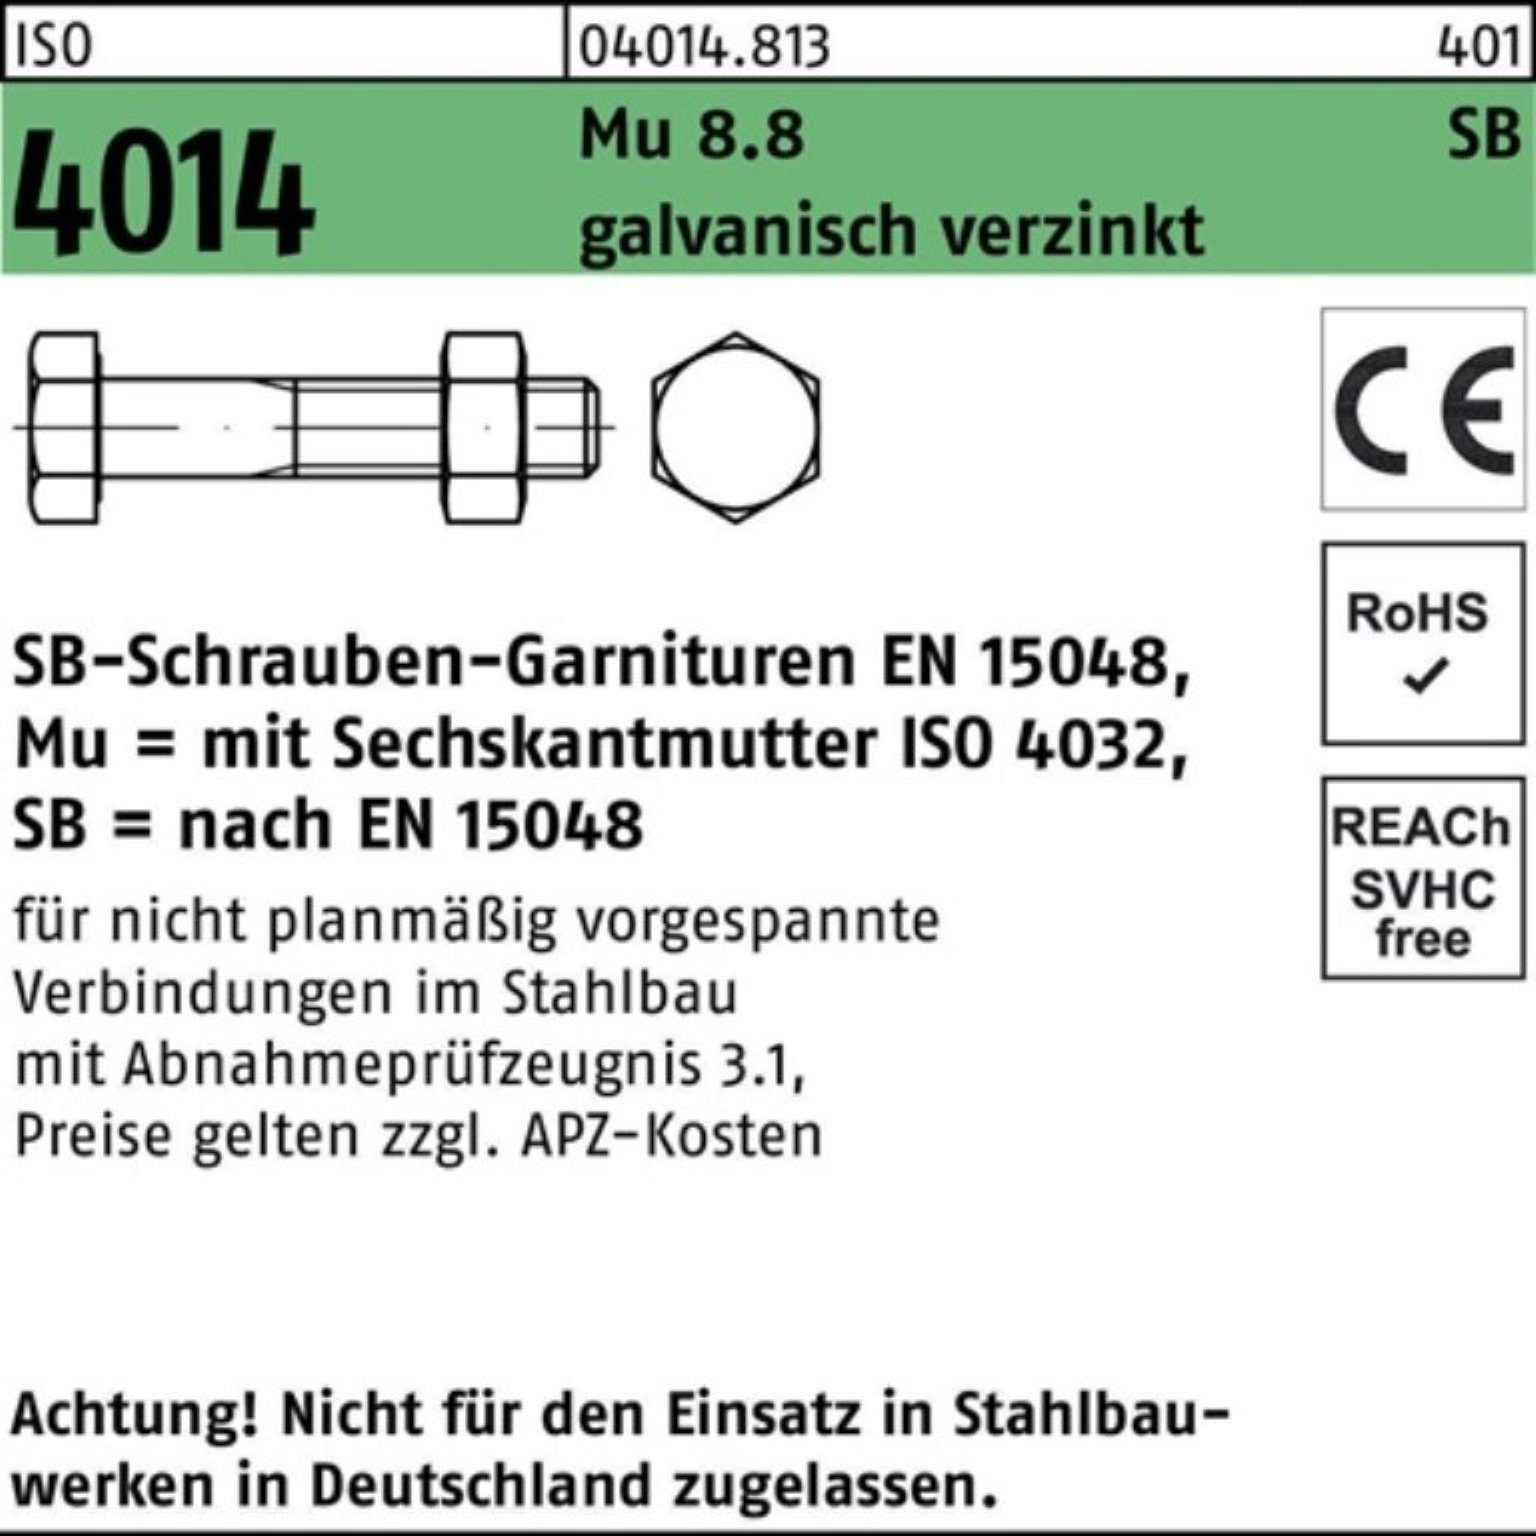 M20x75 Sechskantschraube 100er Bufab Pack Schaft/Mutter 4014 8.8 galv ISO Sechskantschraube Mu